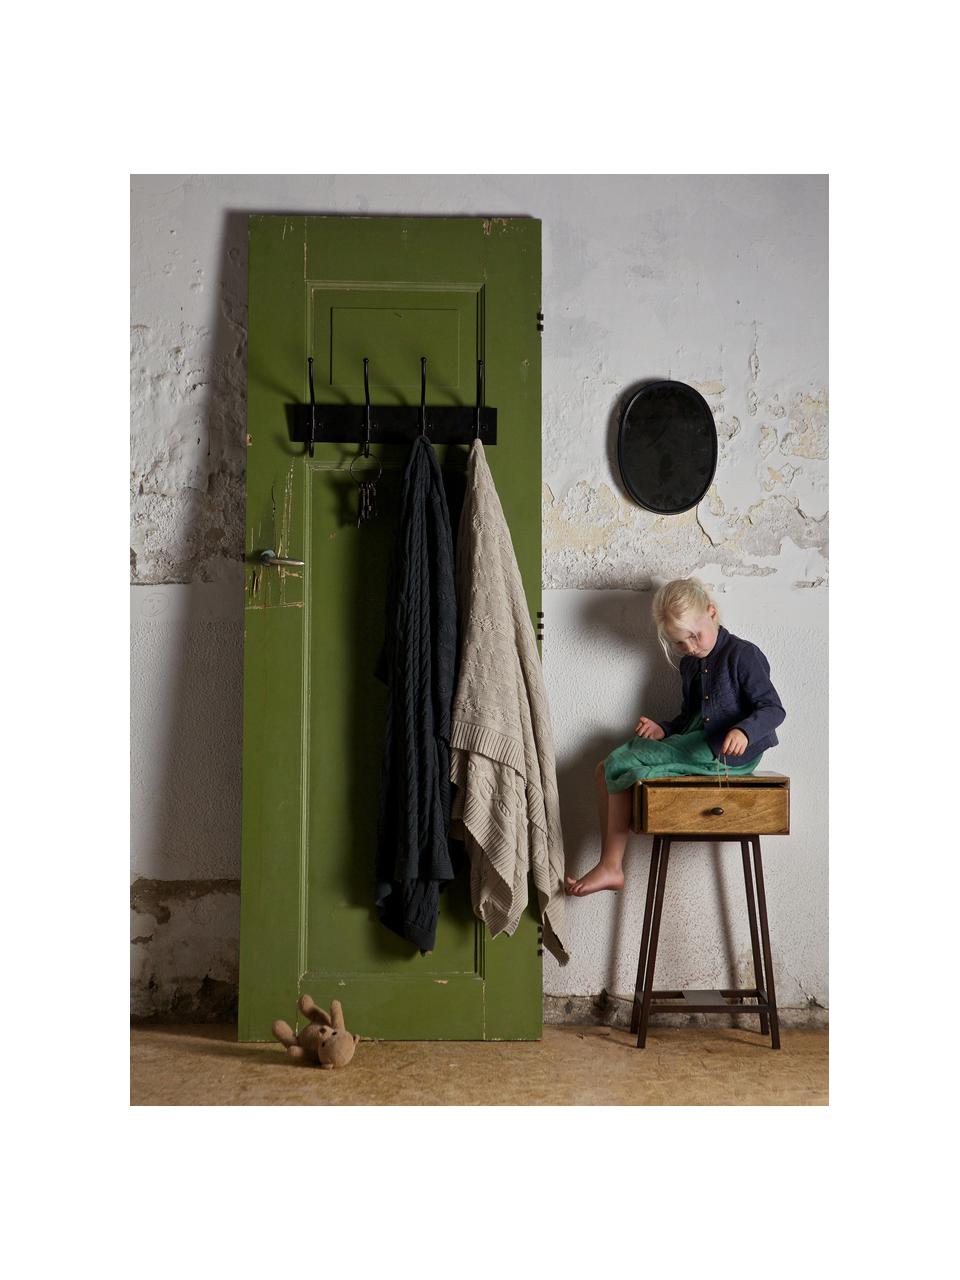 Pomocný stolík so zásuvkou Skybox, Borovicové drevo, hrdzavá hnedá, Š 40 x V 70 cm